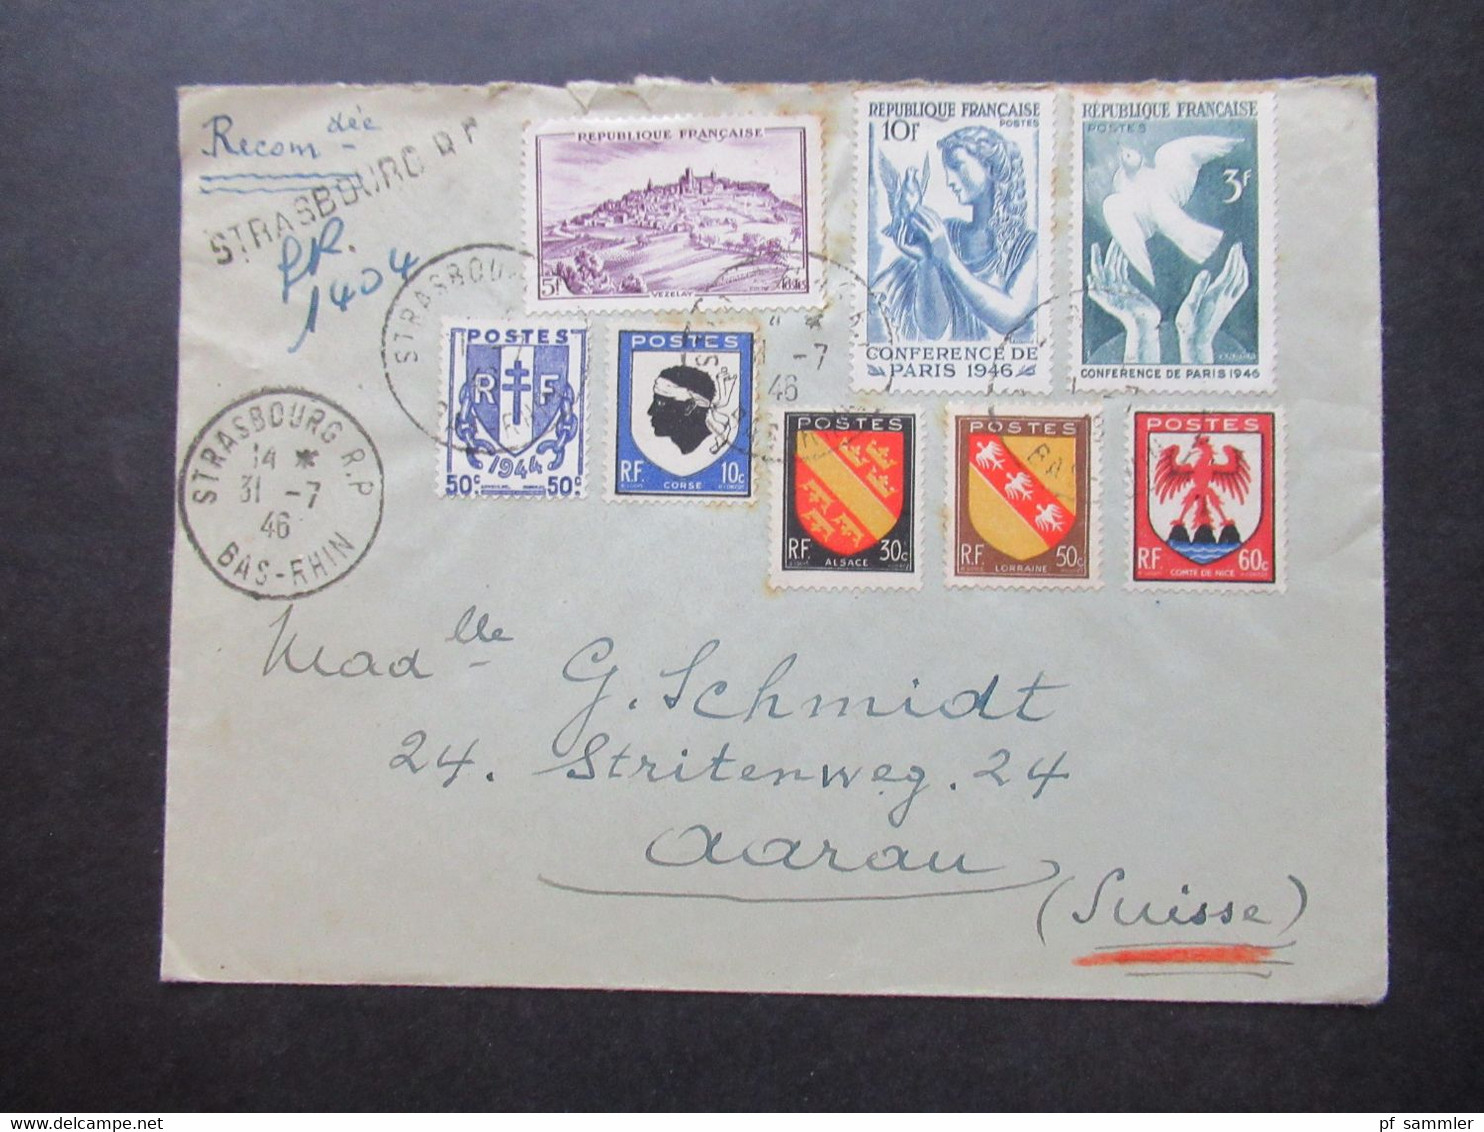 Frankreich 1946 MiF Einschreiben Reco Strasbourg R.P. Nach Aarau Schweiz Mit Ank. Stempel Aarau 1 Briefe - Cartas & Documentos